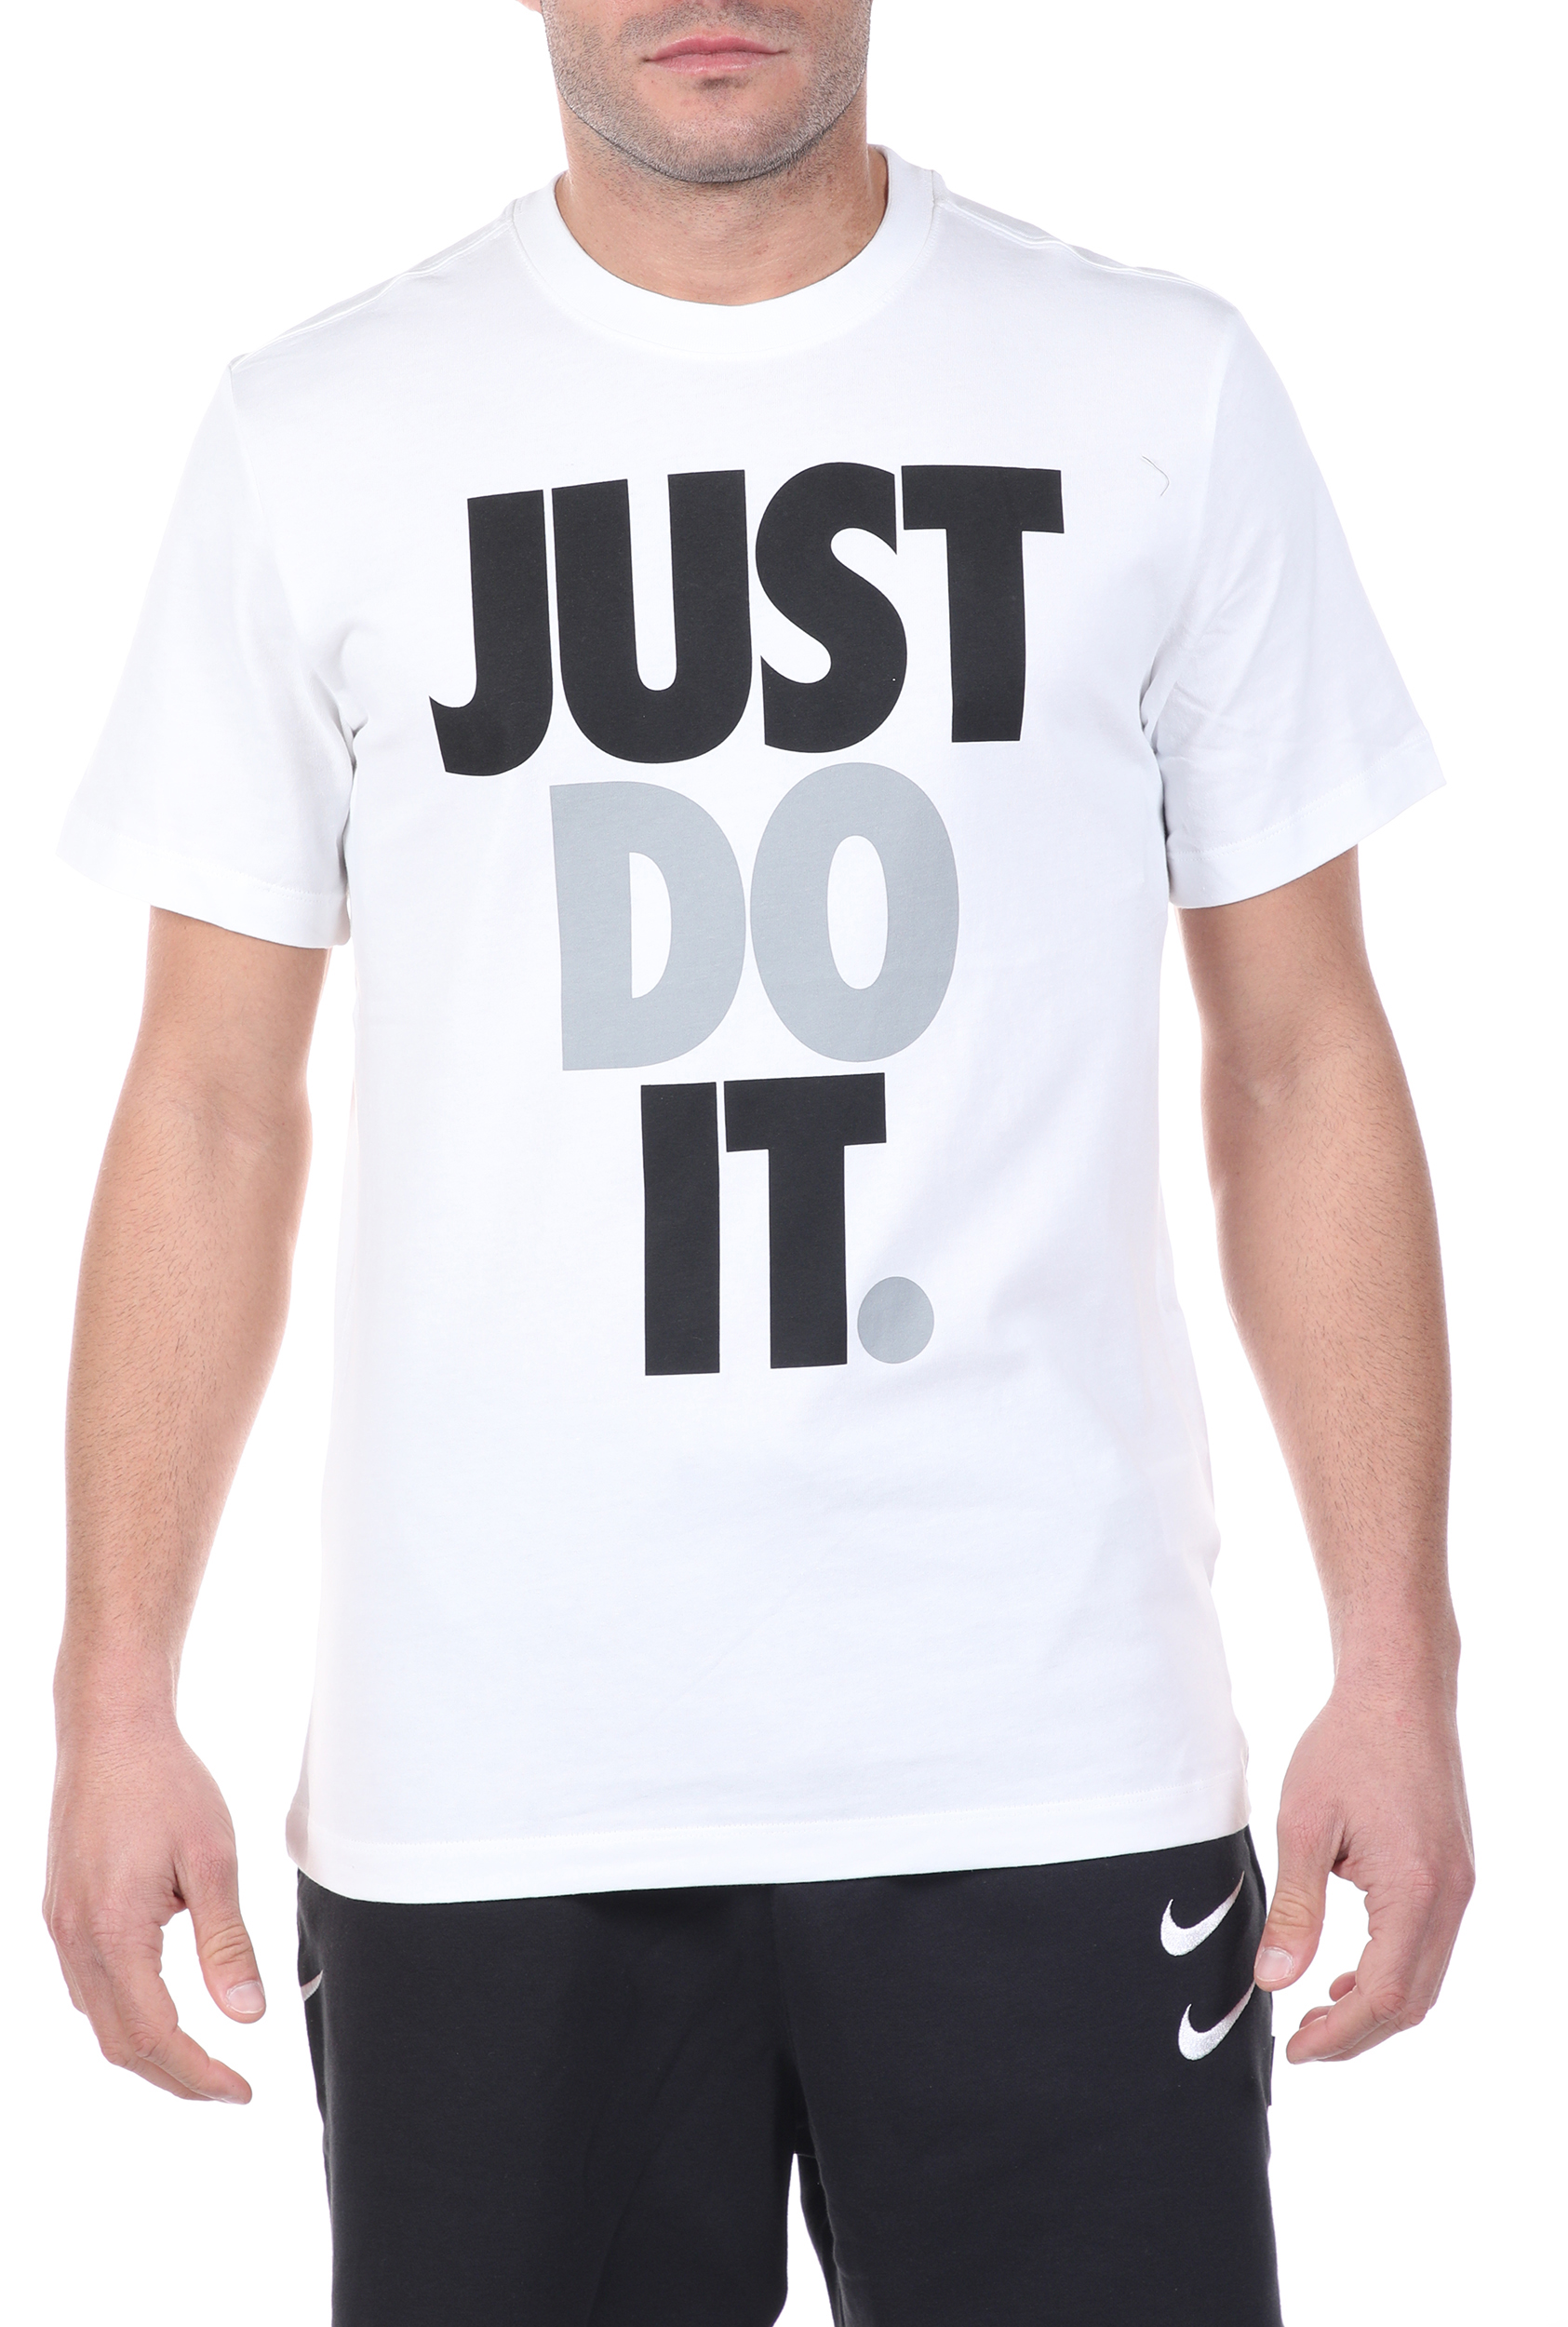 Ανδρικά/Ρούχα/Αθλητικά/T-shirt NIKE - Ανδρικό t-shirt NIKE NSW JDI HBR λευκό